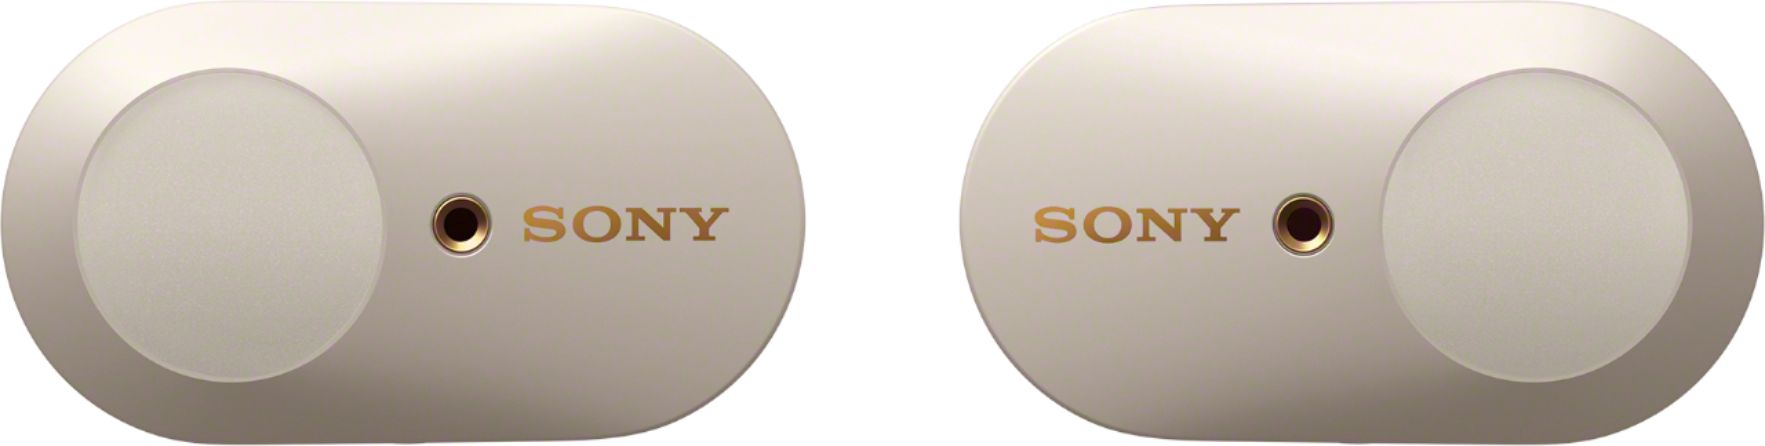 Sony - WF-1000XM3 True Wireless Noise Cancelling In-Ear Headphones - Silver